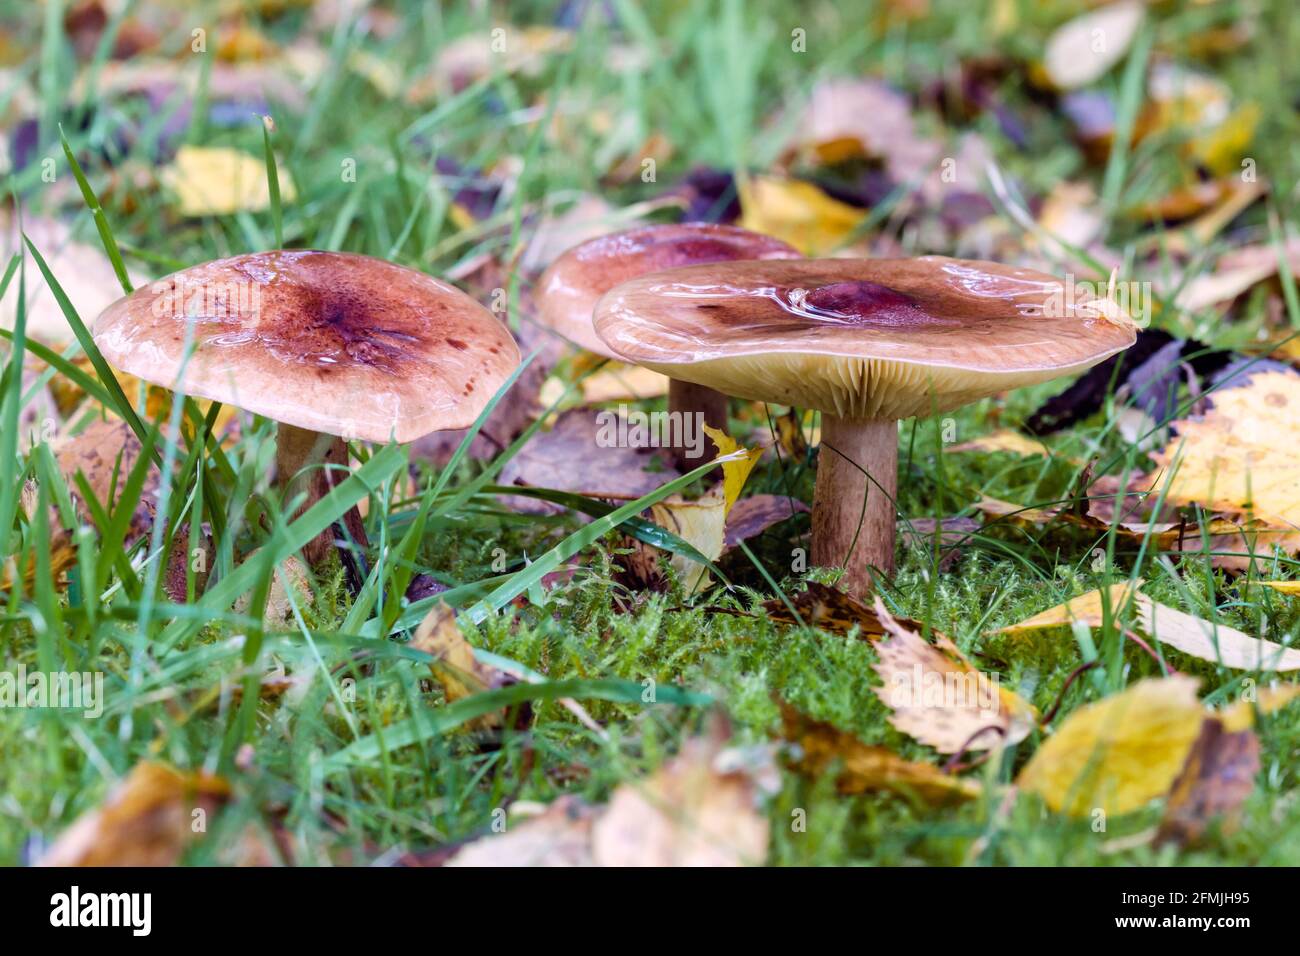 Herald of Winter Hygrophorus hypothejus Pilz wächst auf Gras in Das schottische Hochland Stockfoto